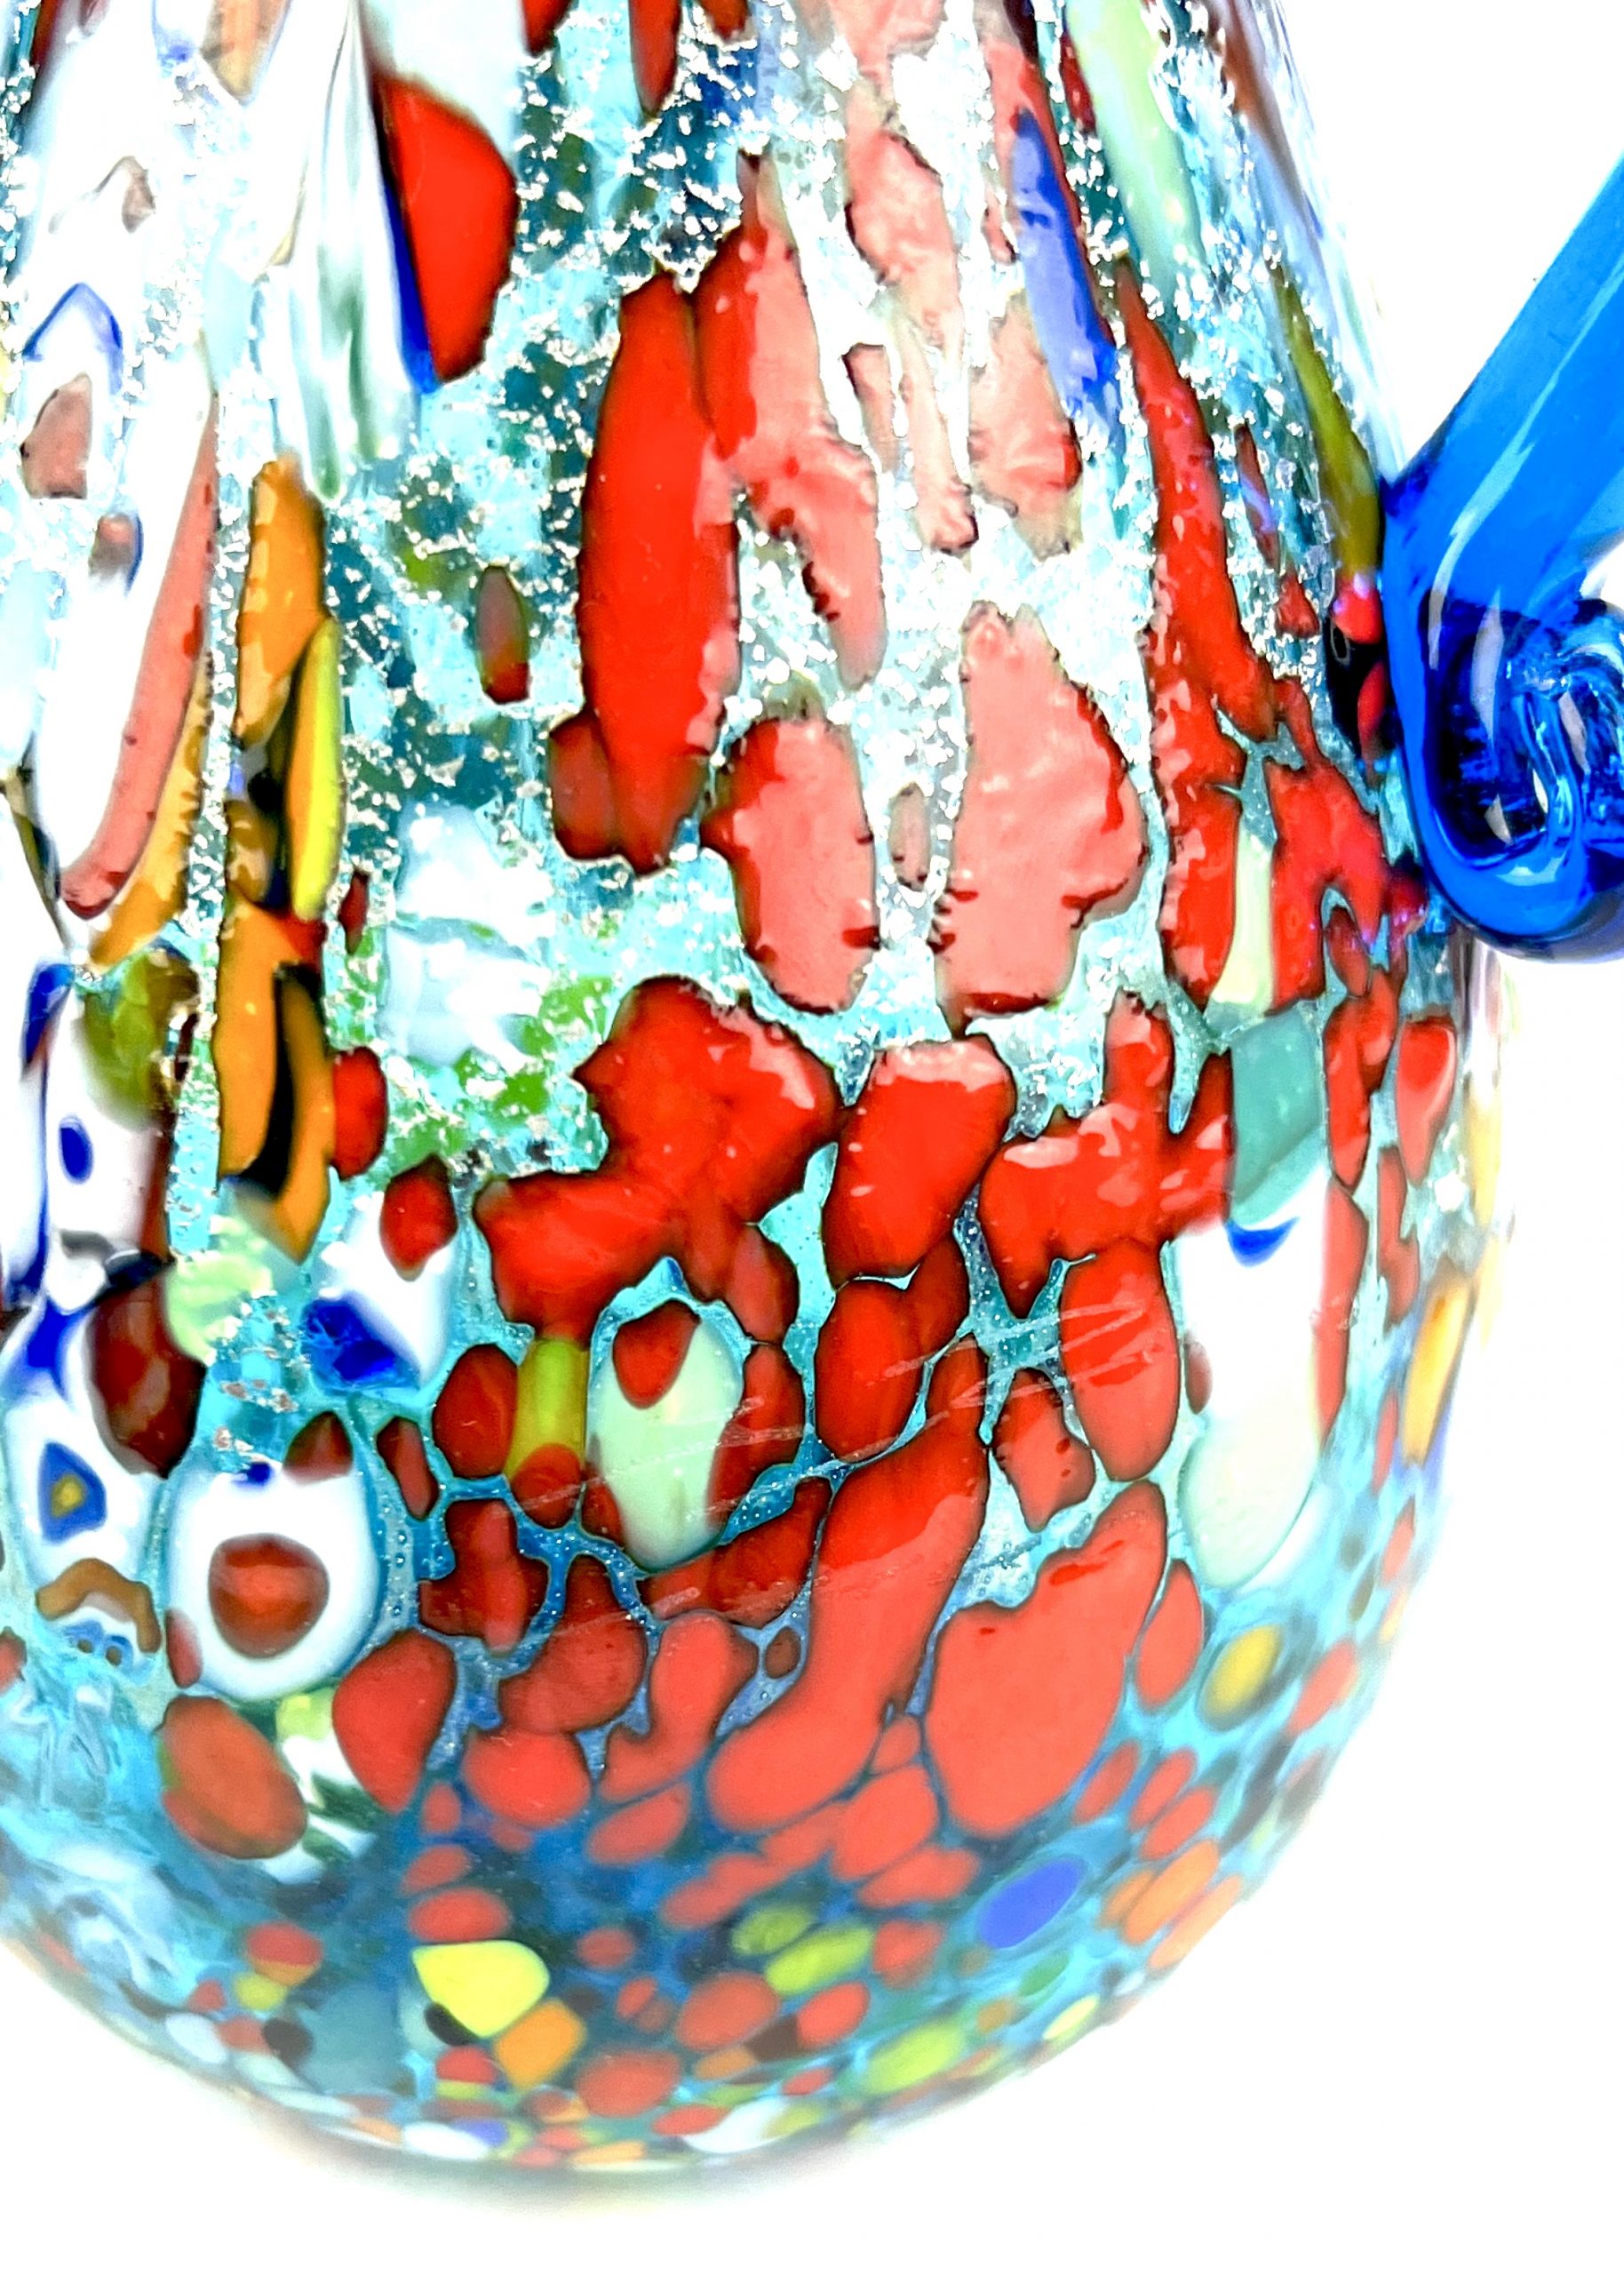 Belteo - Murano Glass Jug With Murrina Millefiori - Made Murano Glass